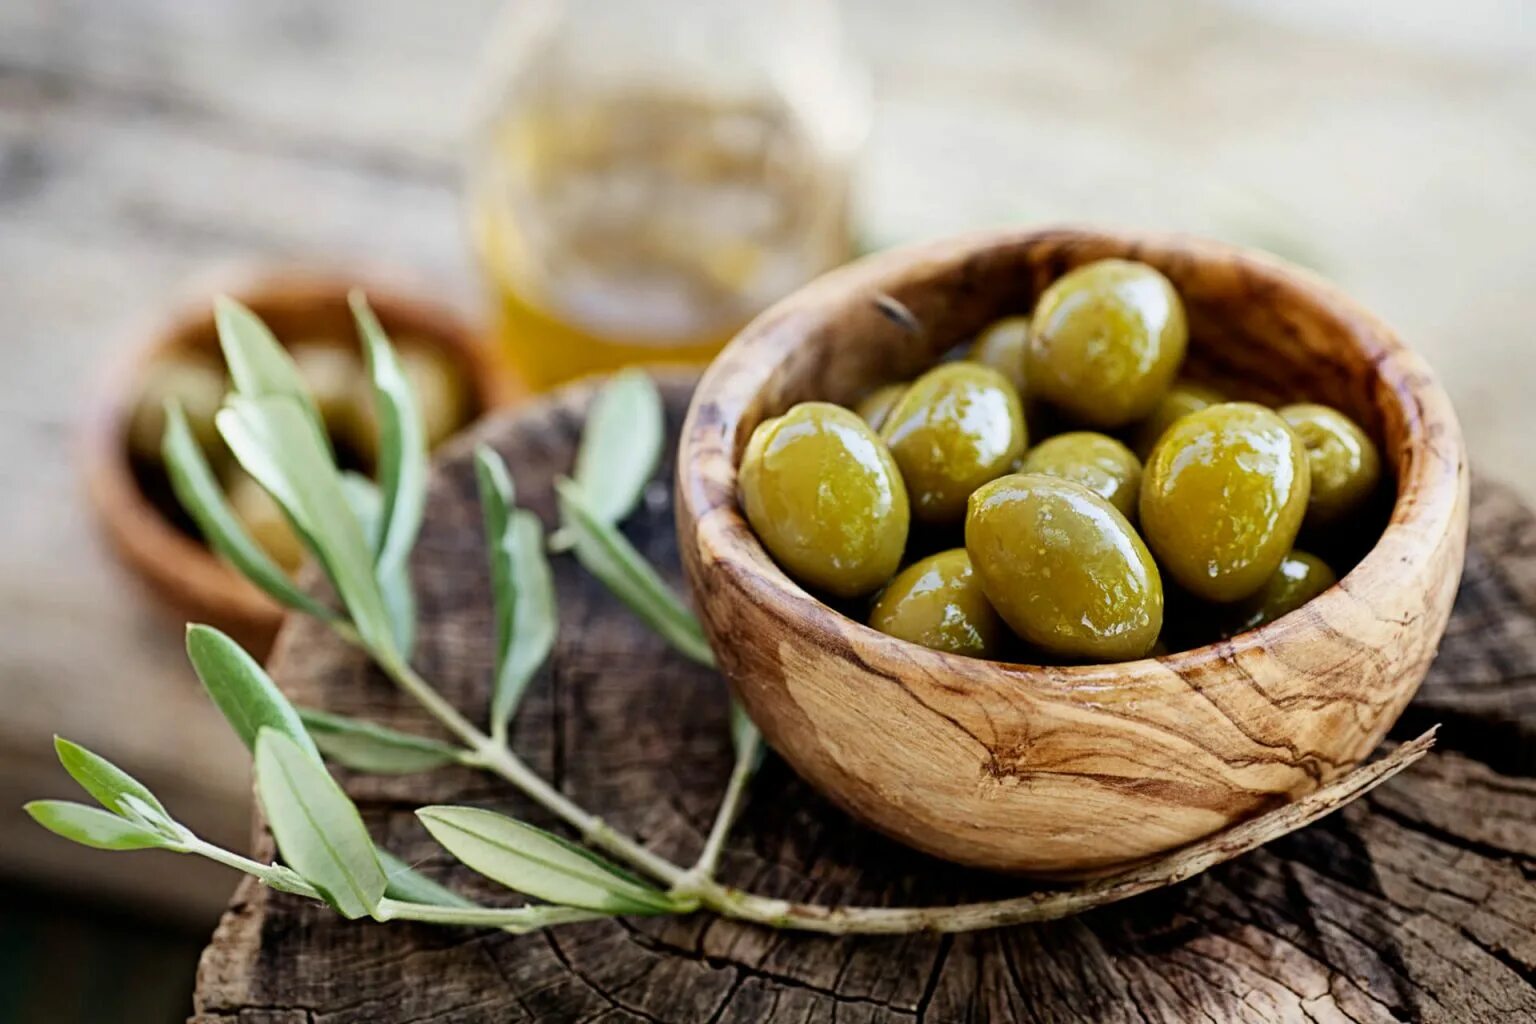 Fior di Terra оливки. Оливковые косточки маслины. Греческие оливки. Оливки большие зеленые. Оливковое масло в пищу